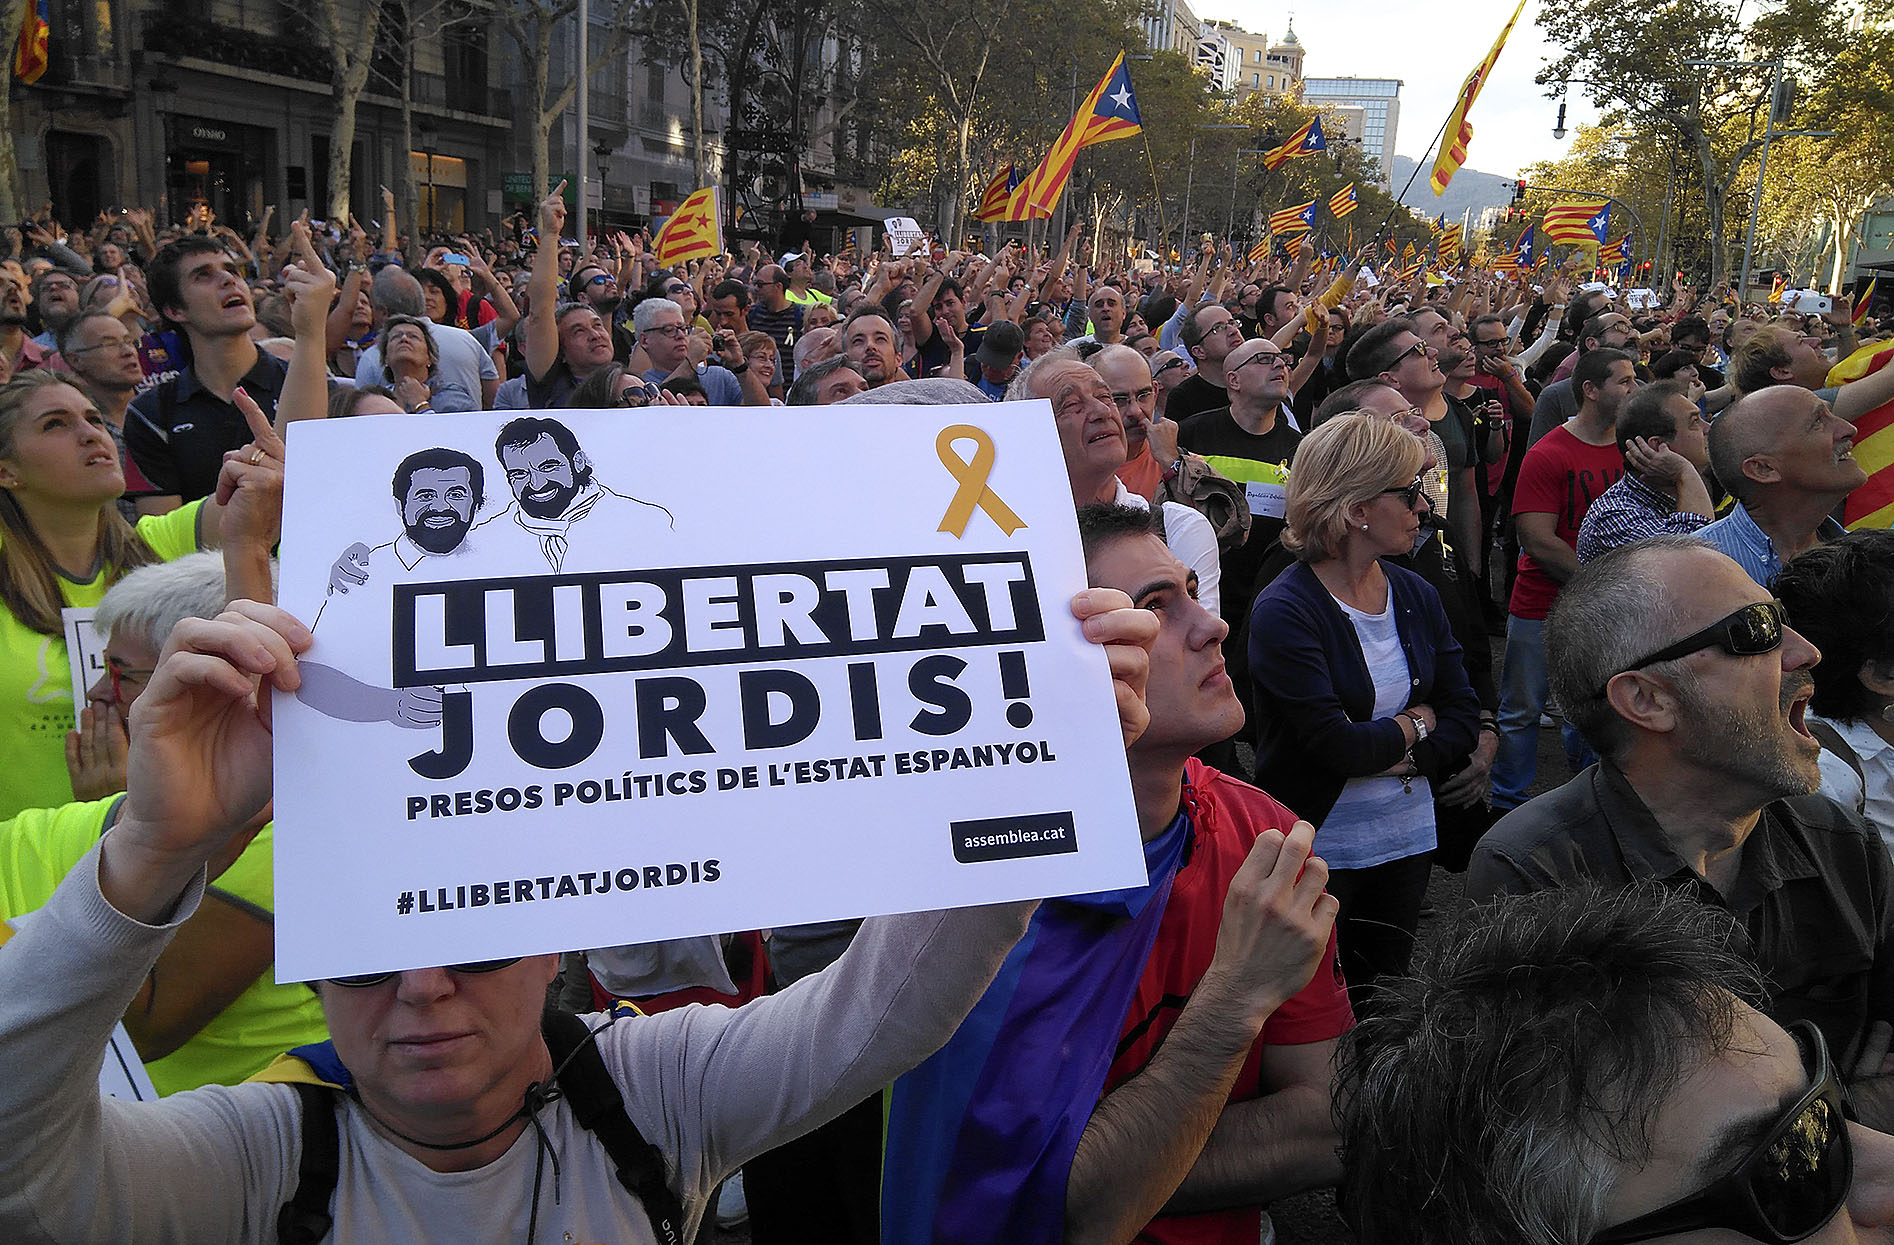 La manifestació a Barcelona va aplegar 450.000 persones segons la Guàrdia Urbana